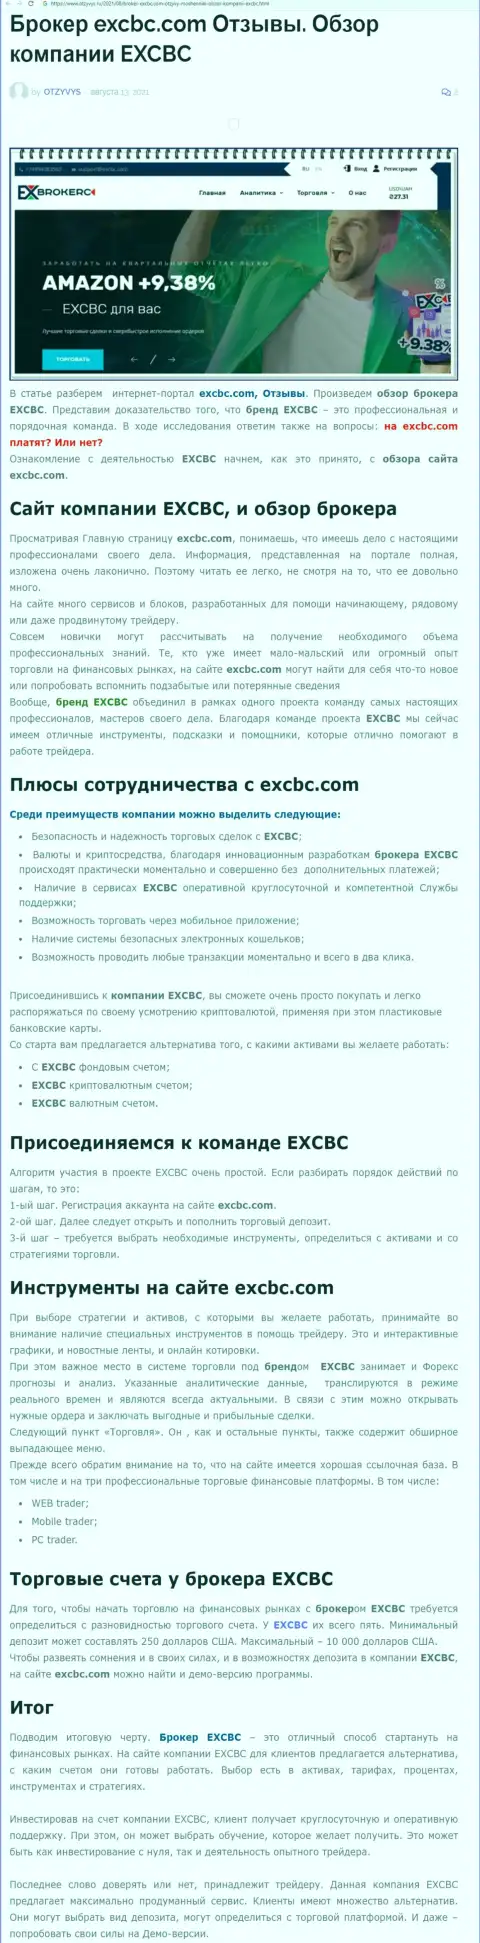 Обзорная статья о Форекс организации EXCBC на веб-сайте Otzyvys Ru